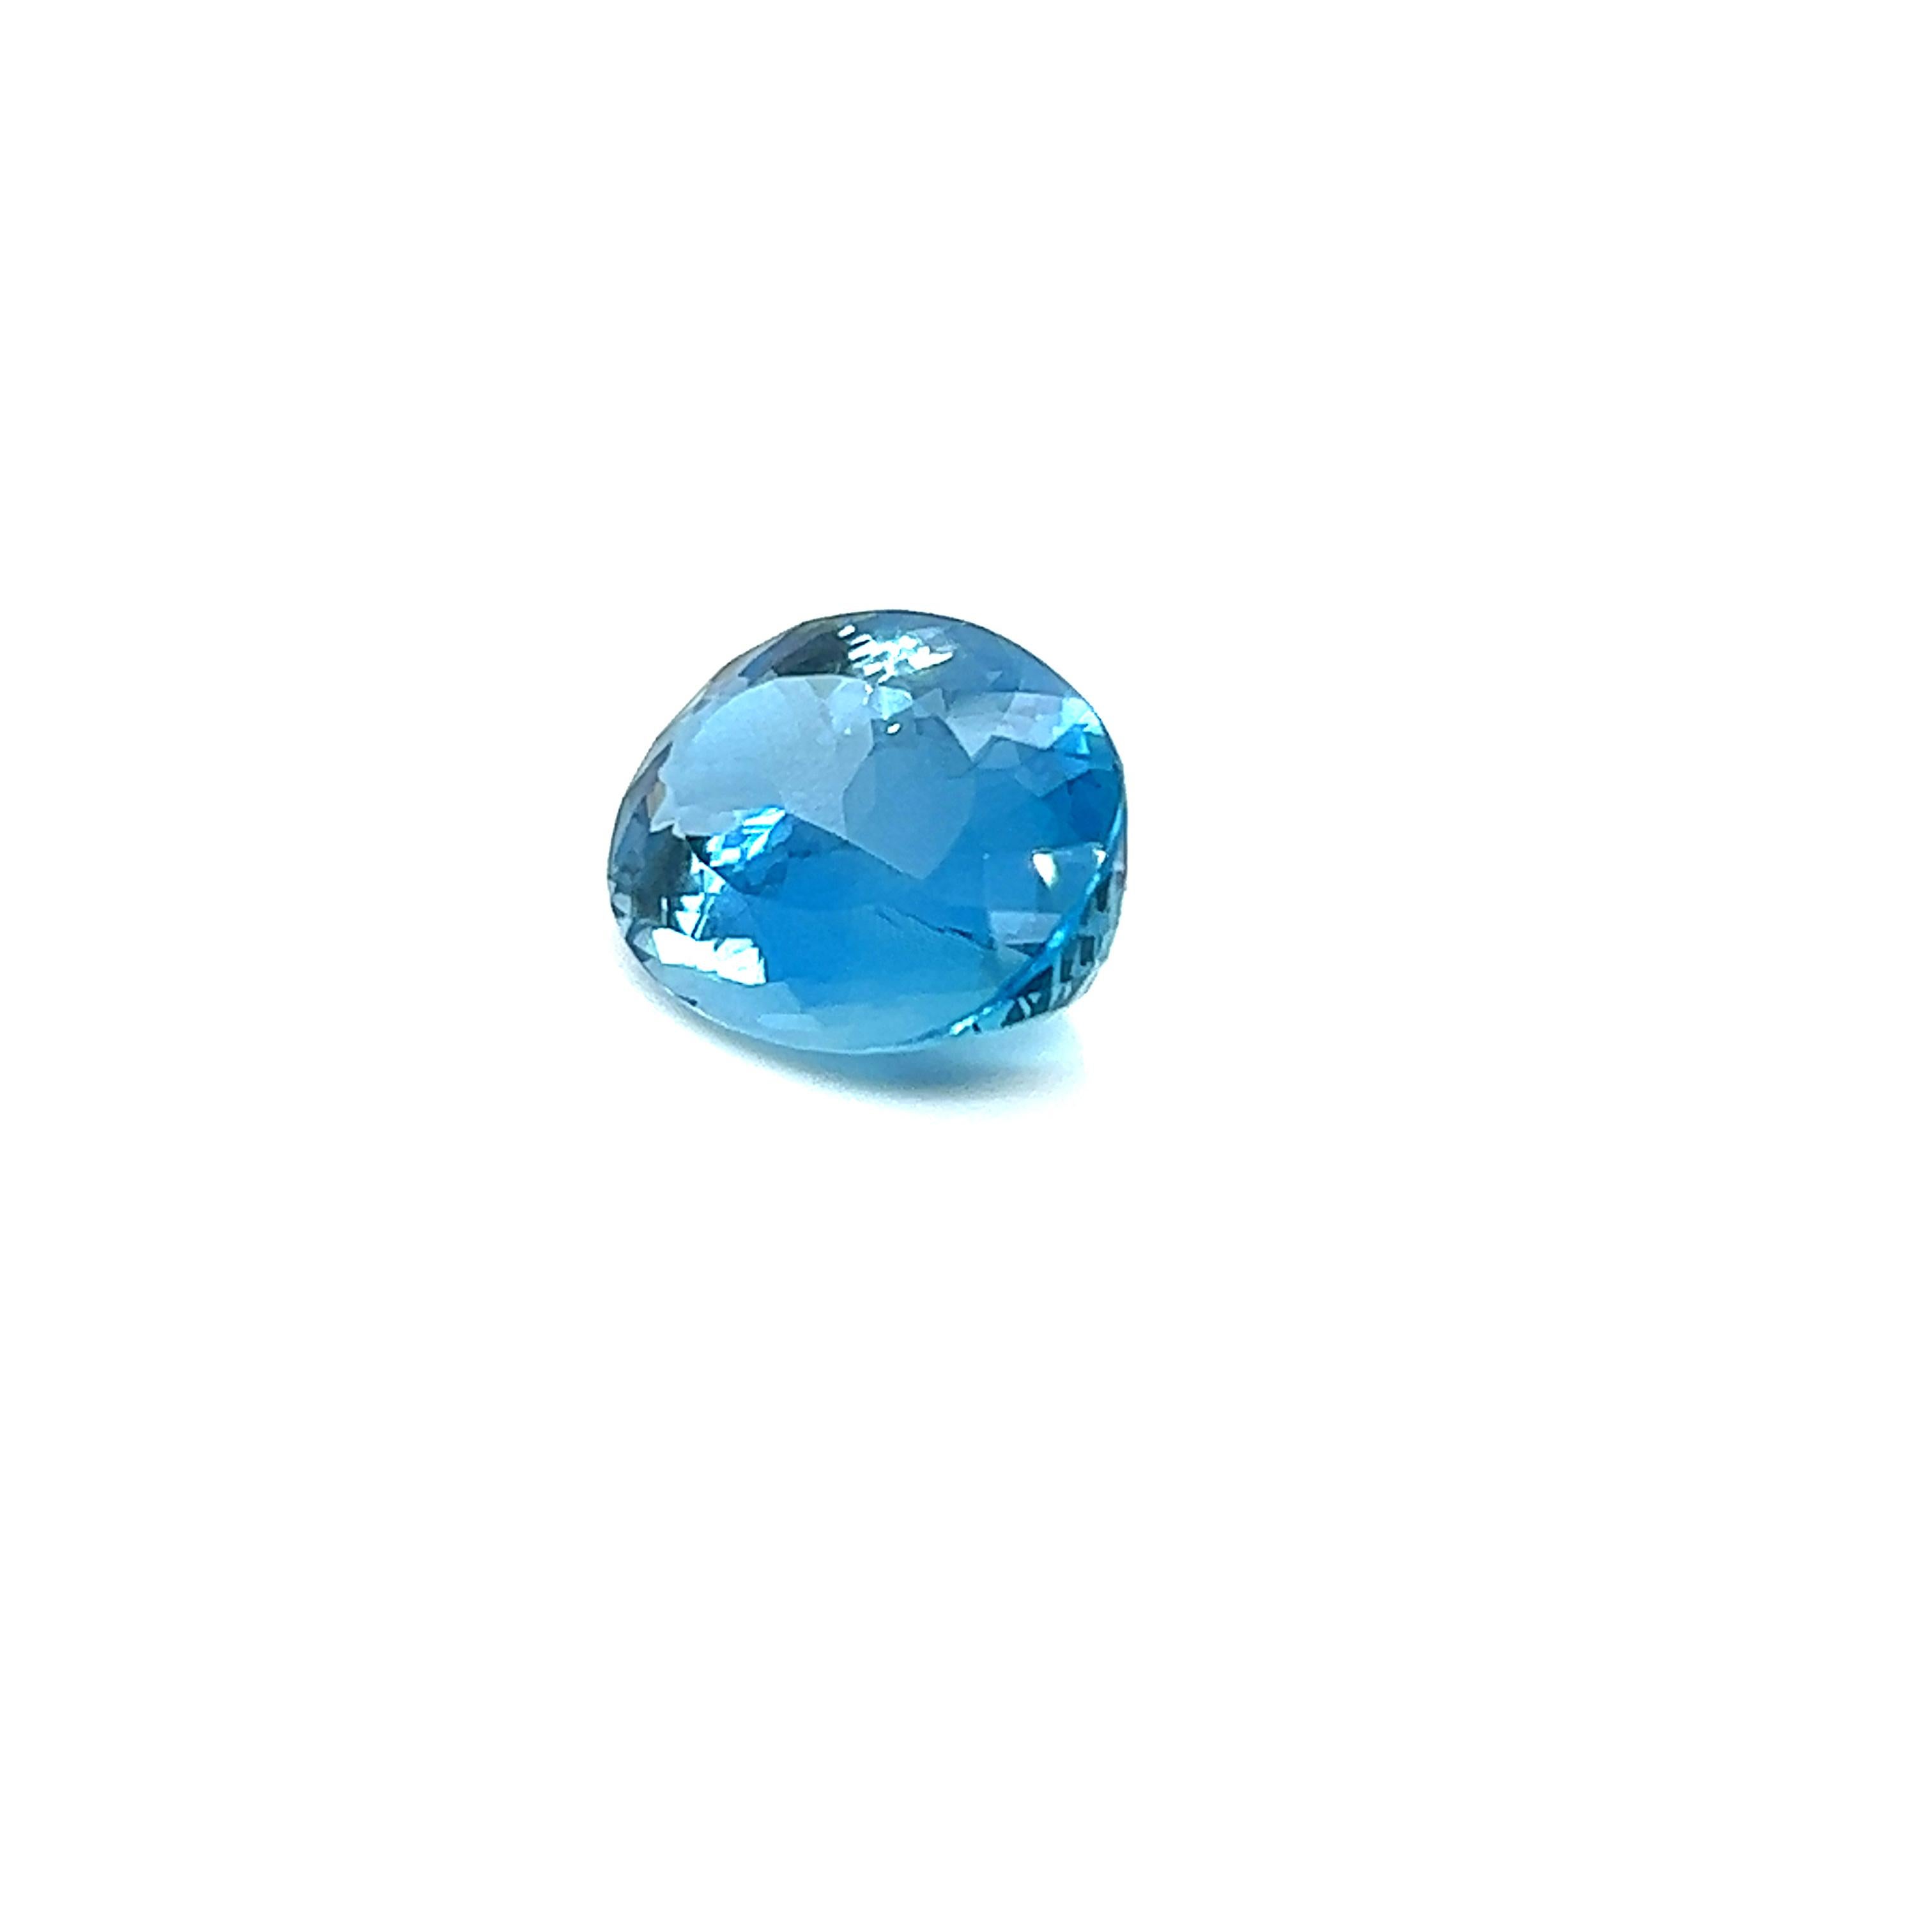 price of aquamarine per carat